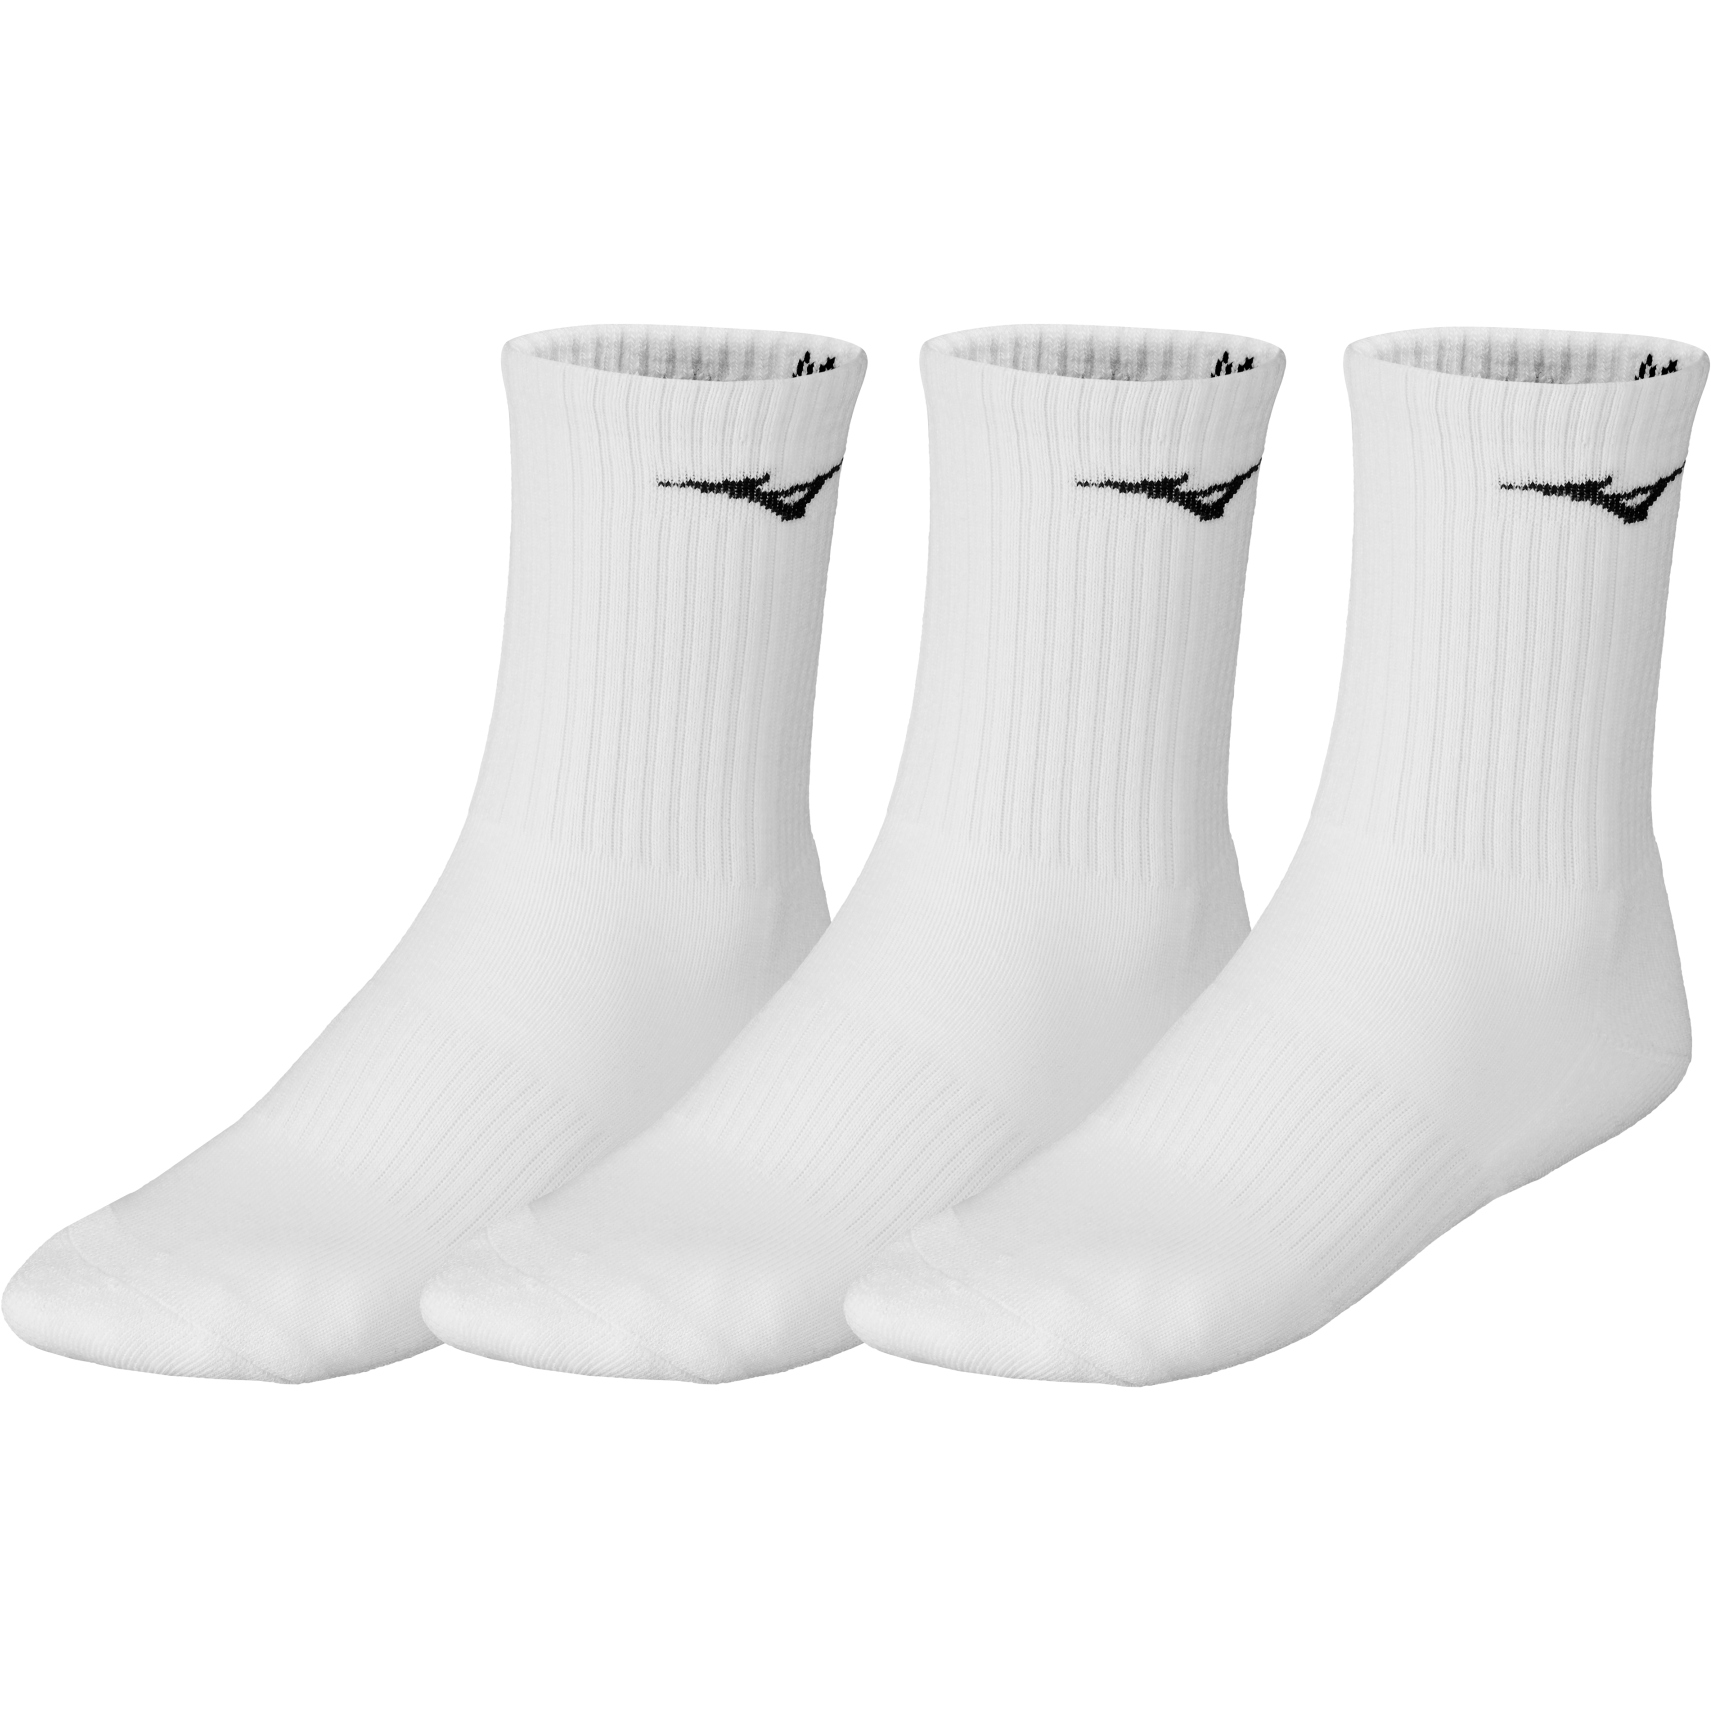 Produktbild von Mizuno Training Socken 3er Pack - Weiß / Weiß / Weiß